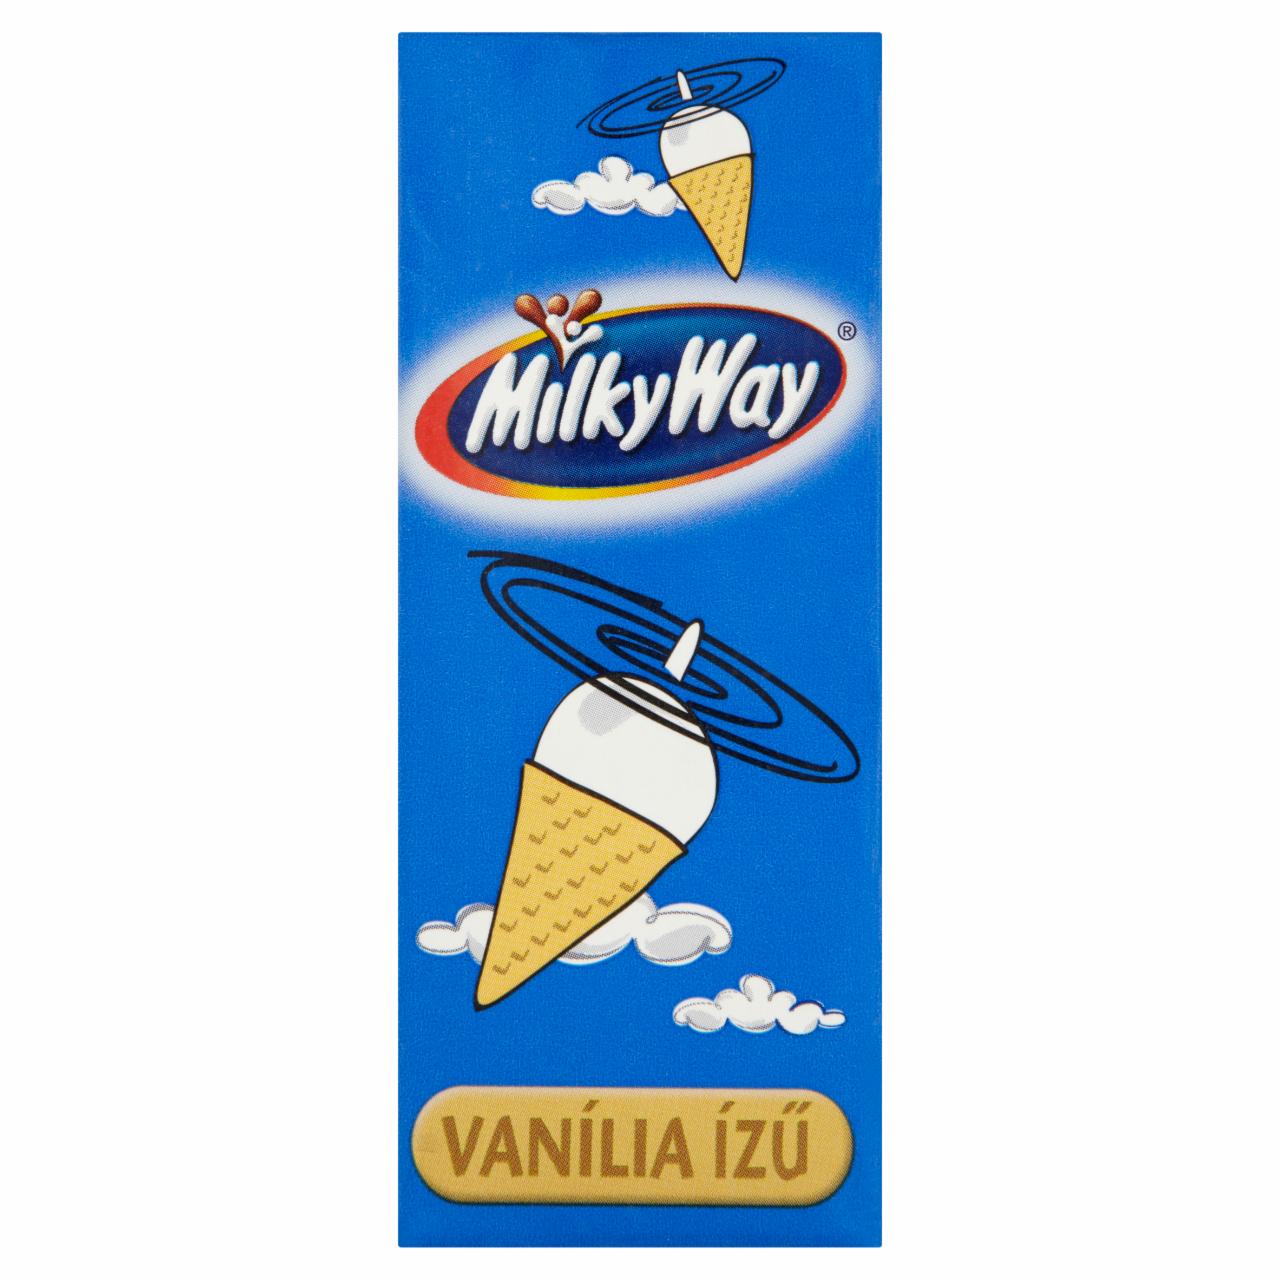 Képek - Milky Way vaníliaízű ital 180 ml